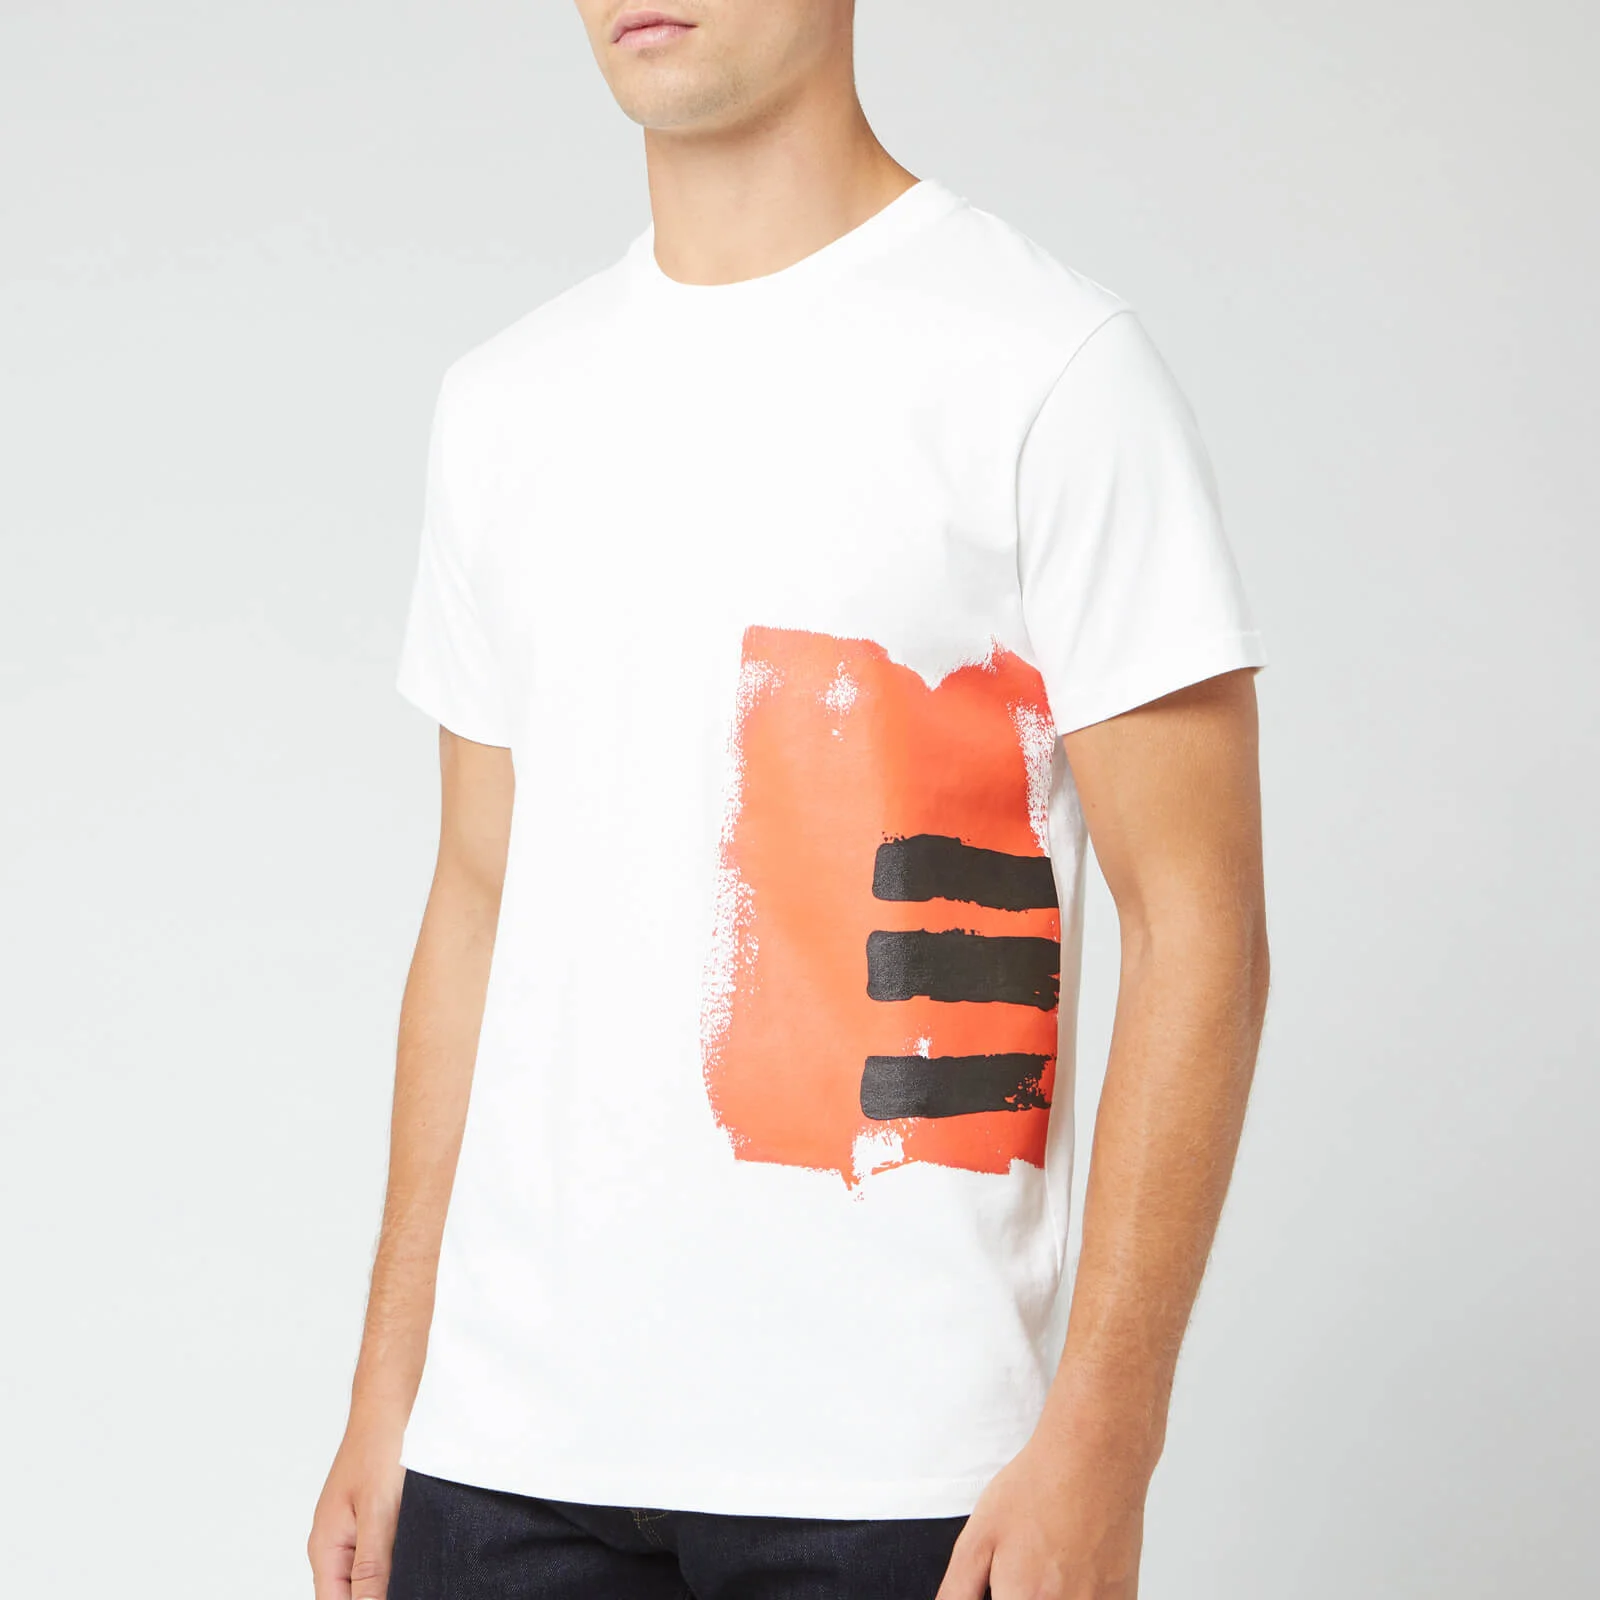 Helmut Lang Men's Josephine T-Shirt - Chalk White Image 1